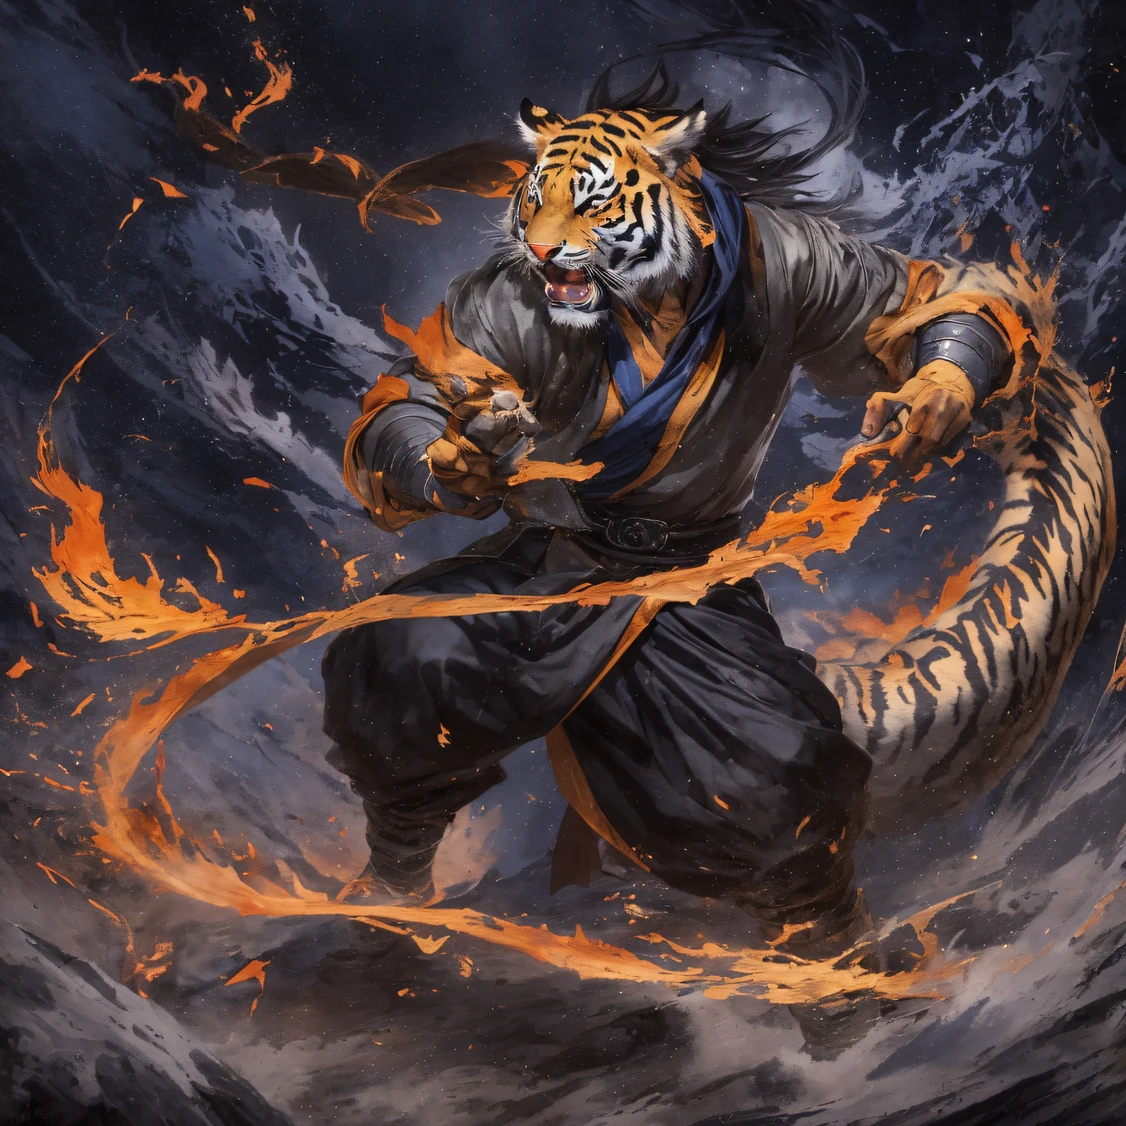 noite Tiger Demon 32K，Reino do Demônio Imortal da Fênix, Encontro casual com Liu Hanshu, Ele viu nele seu antigo eu, Foi decidido levá-lo como aprendiz, Ensine-o a se proteger, Mas por causa do mapa estelar tibetano, Phoenix e a família Liu、A Seita Espada de Jade estabelece relacionamentos, Abre com a morte de Liu Hanshu, Qin Yu embarcou no caminho do confronto com um inimigo forte, Trabalhando duro, Torne-se mais forte, Atenha-se ao seu próprio caminho principal de justiça, （Demônio tigre）olhos cheios de raiva，O lagarto monitor cerrou os punhos，Apresse-se，Dê um golpe fatal em seu oponente，corpo inteiro lésbica，Full body noite Tiger Demon Male Mage 32K（Obra-prima Canyon Ultra HD）noite Tiger Demon（desfiladeiros）Suba pelas ruas， O cenário da explosão（desfiladeiros）， （noite）， The angry fighting stance of the noite Tiger Demon， olhando para o chão， Bandana de linho batik， Vestuário de mangas compridas com padrão python chinês， desfiladeiros（Respingo abstrato de propileno：1.2）， Fundo de relâmpago de nuvens escuras，Farinha voa（realisticamente：1.4），Cabelo de cor preta，Farinha esvoaçante，fundo do arco-íris， Uma alta resolução， o detalhe， Fotografia RAW， Re afiado， Filme Nikon D850 Foto stock de Jefferies Lee 4 Kodak Portra 400 Camera F1.6 tiros, Cores ricas, texturas vívidas ultra-realistas, iluminação dramática, Tendência da estação de arte do Unreal Engine, Cinestir 800，cabelo preto esvoaçante,（（（Desfiladeiro da Selva）））Os feridos alinhados nas ruas（vale）Suba na qualidade de imagem em tempo real do streetovie master（obra-prima，k hd，hiper HD，32K）noite Tiger Demon（Lenço batik de linho）， Combat posture， olhando para o chão， Bandana de linho， Roupas de manga comprida com padrão de demônio tigre noturno chinês，noite Tiger Demon（Respingo abstrato de guache：1.2）， Fundo de relâmpago de nuvens escuras，aspersão